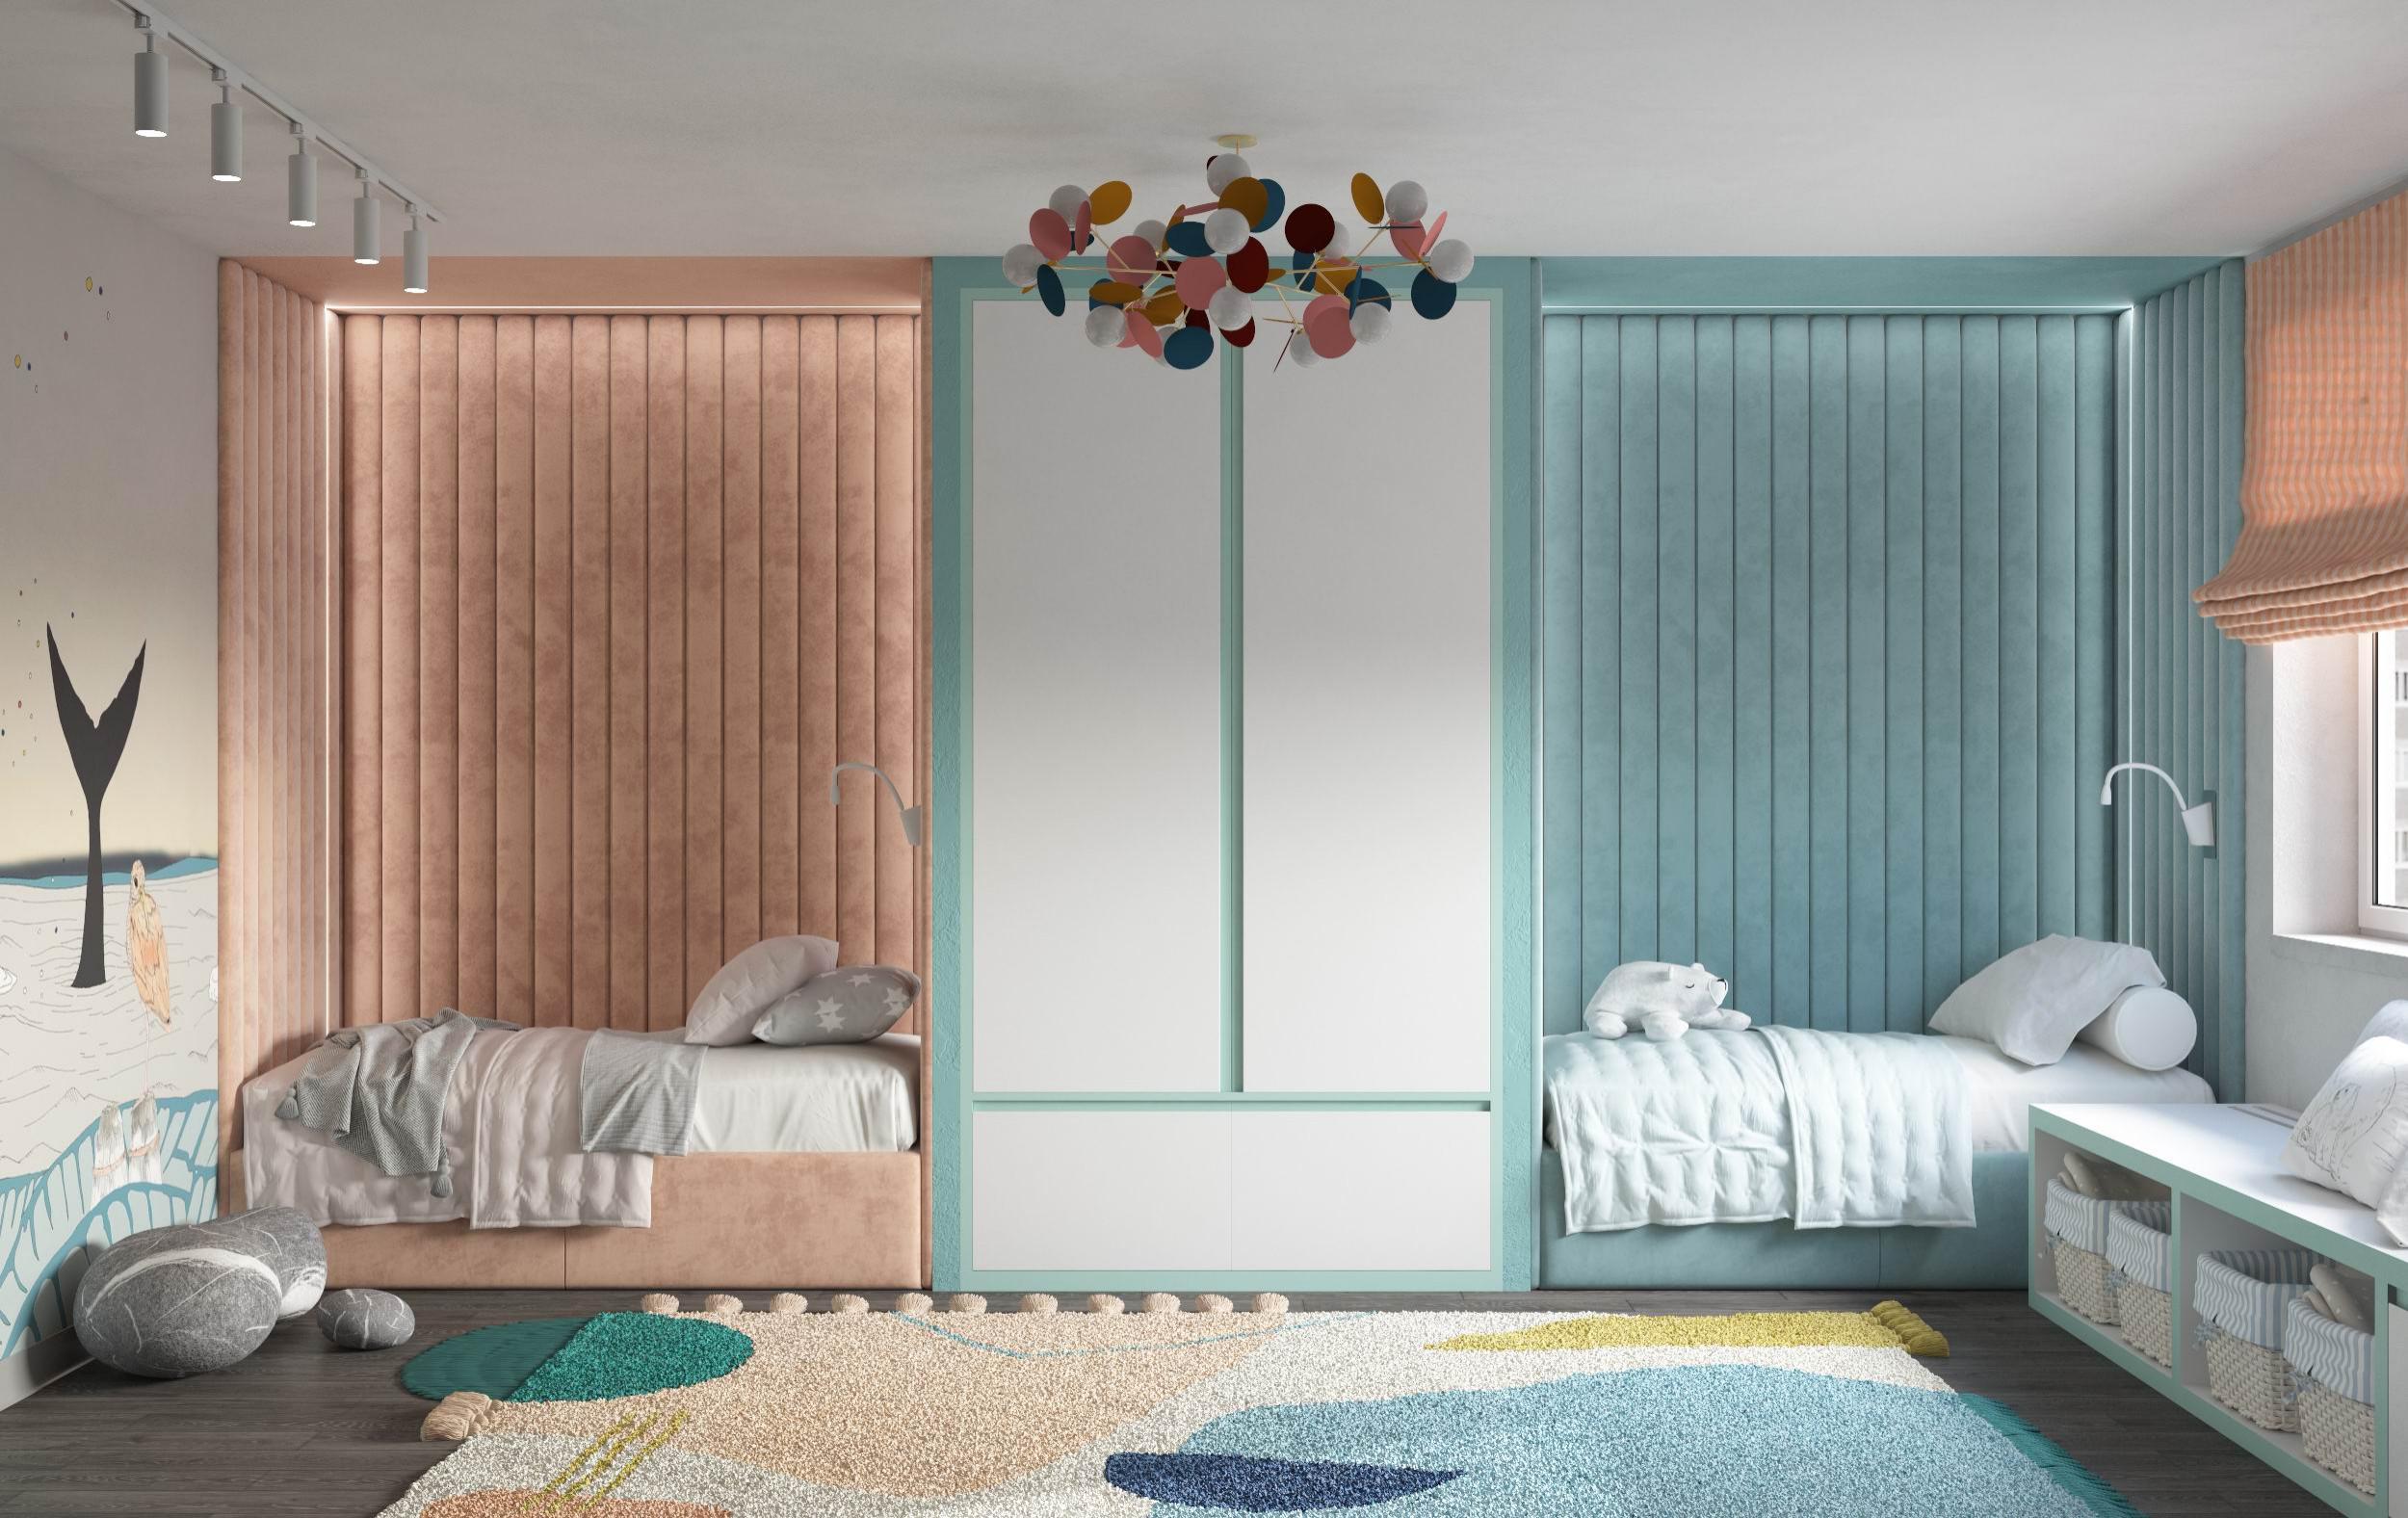 Интерьер спальни с вертикальными жалюзи в современном стиле